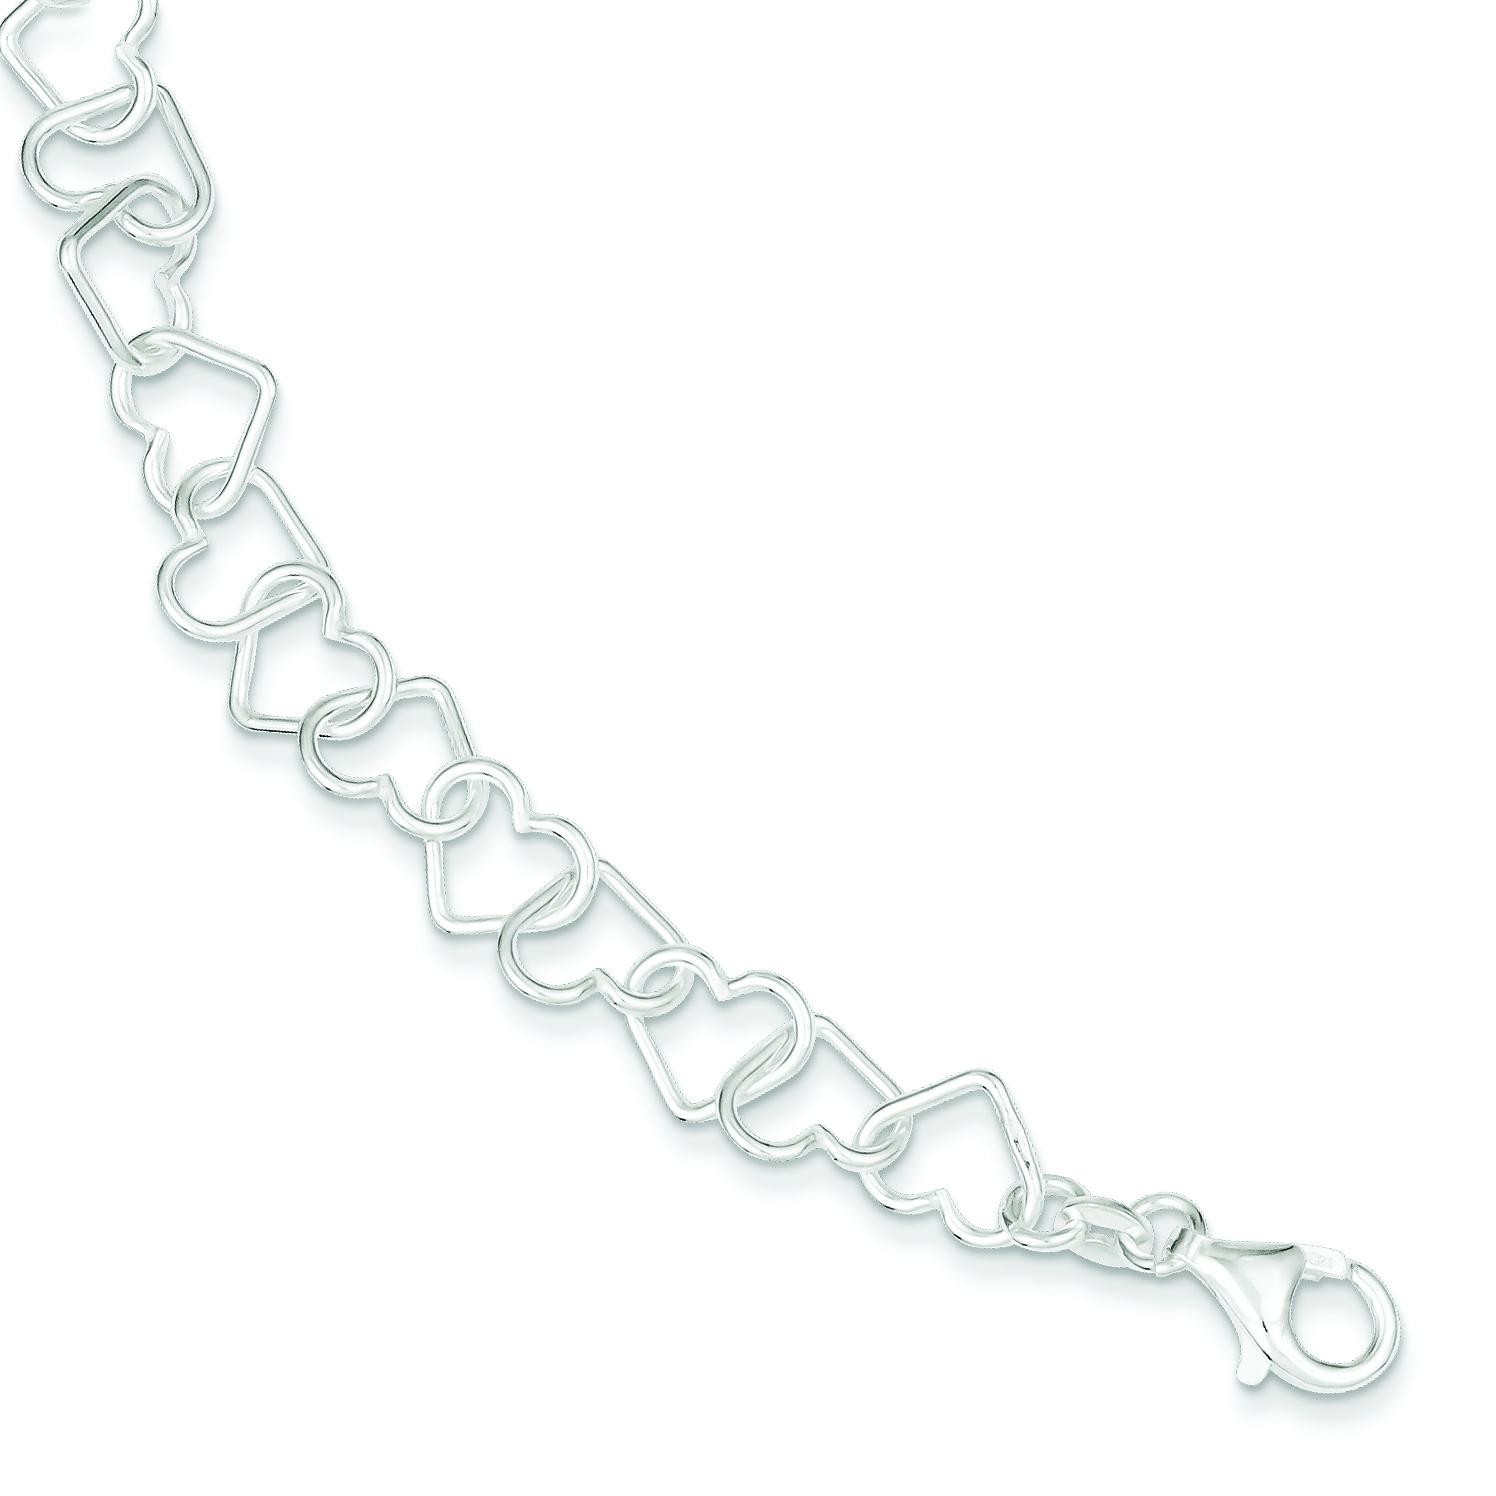 7.5inch Heart Link Bracelet in Sterling Silver